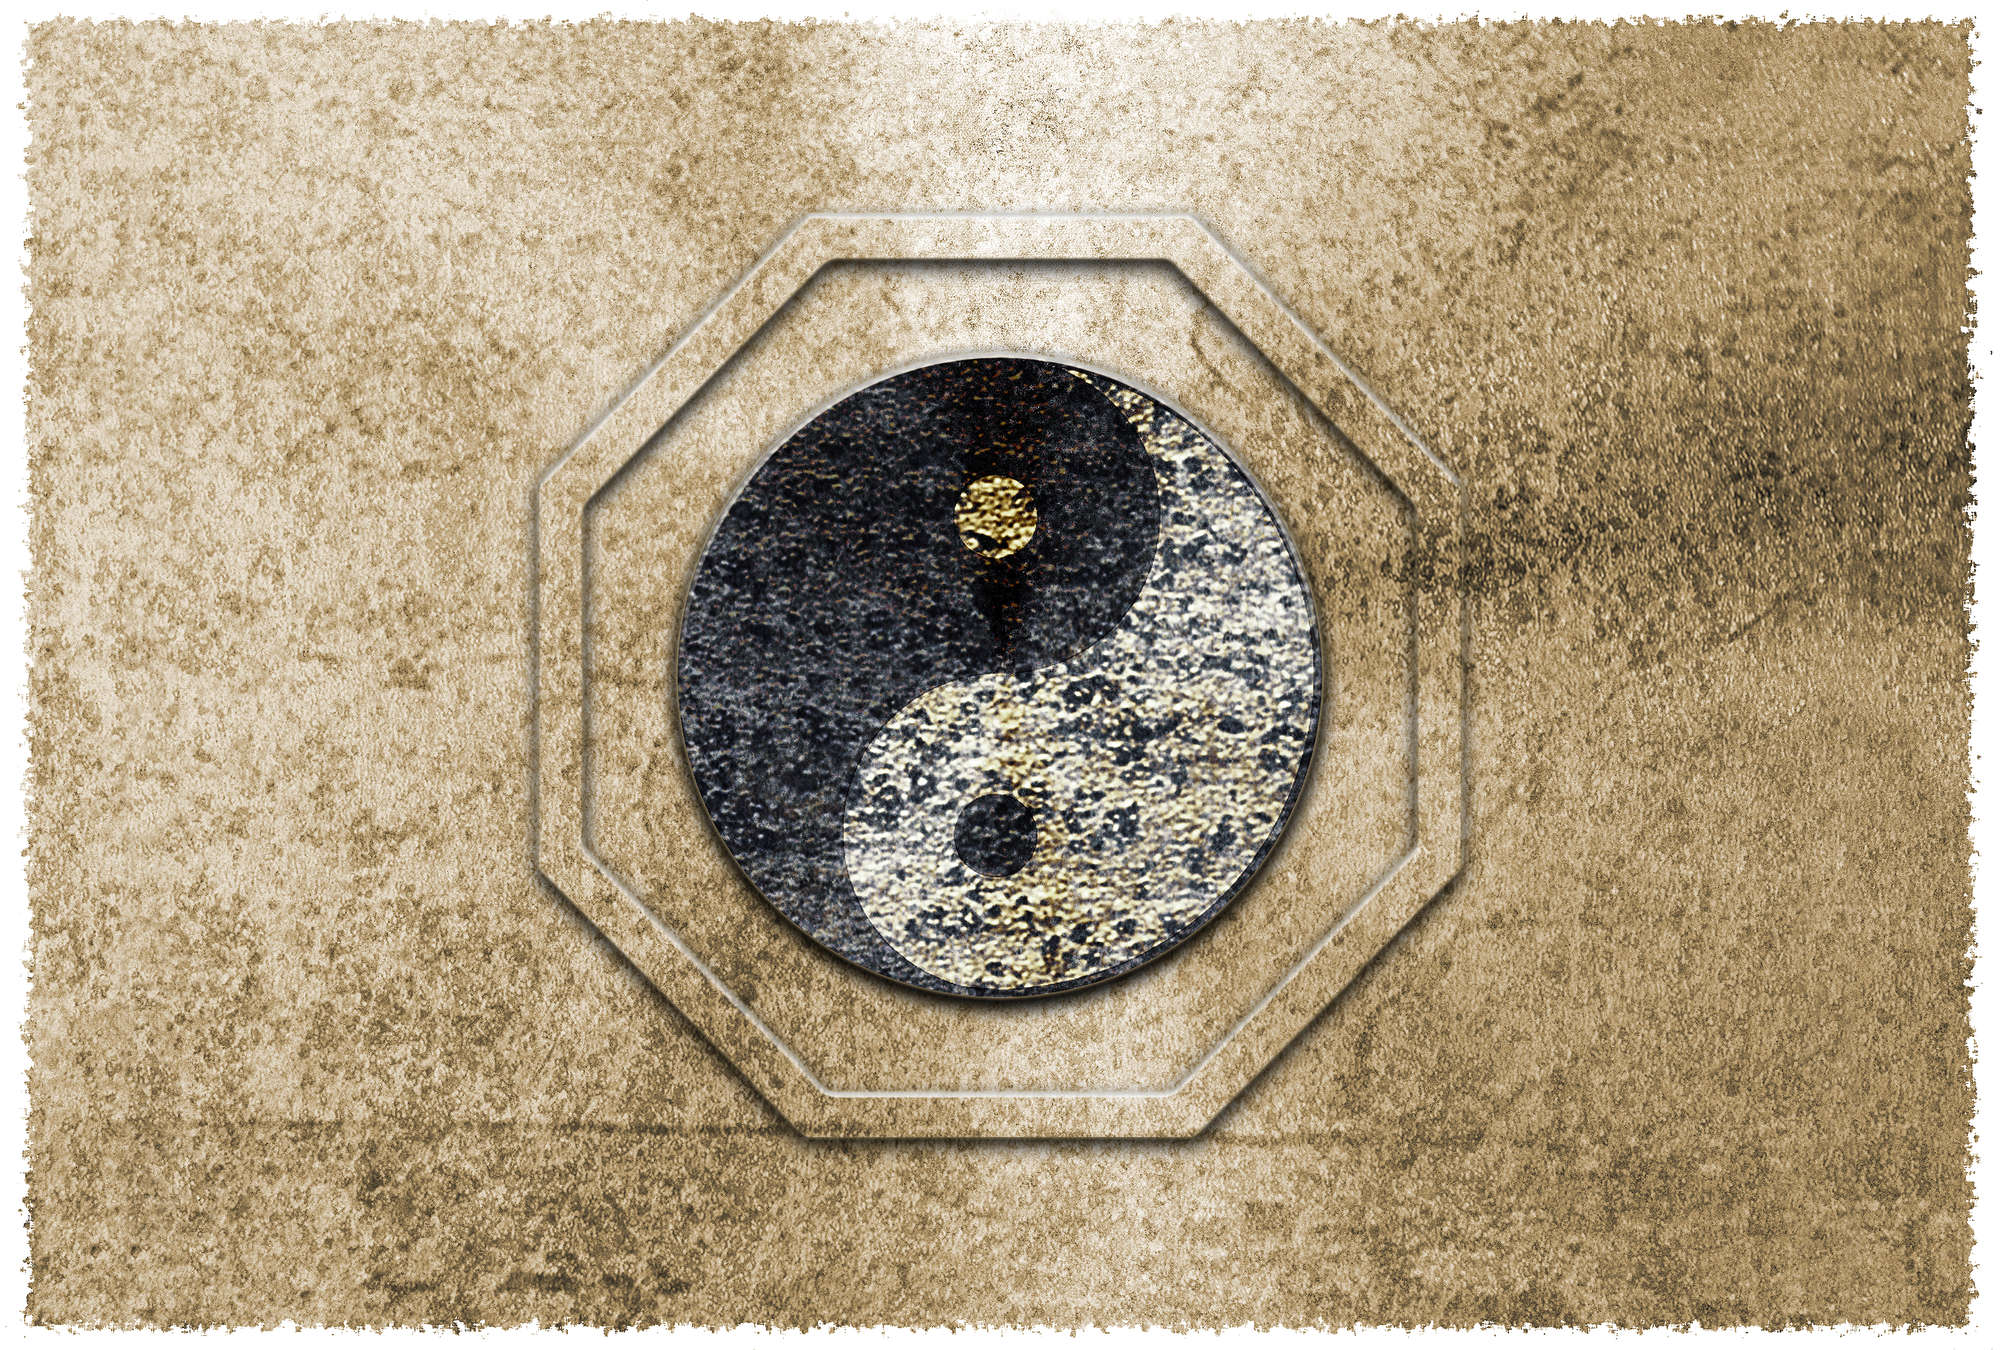             Yin&Yang, Aziatisch Symbool & Gouden Accentbehang - Bruin, Zwart, Wit
        